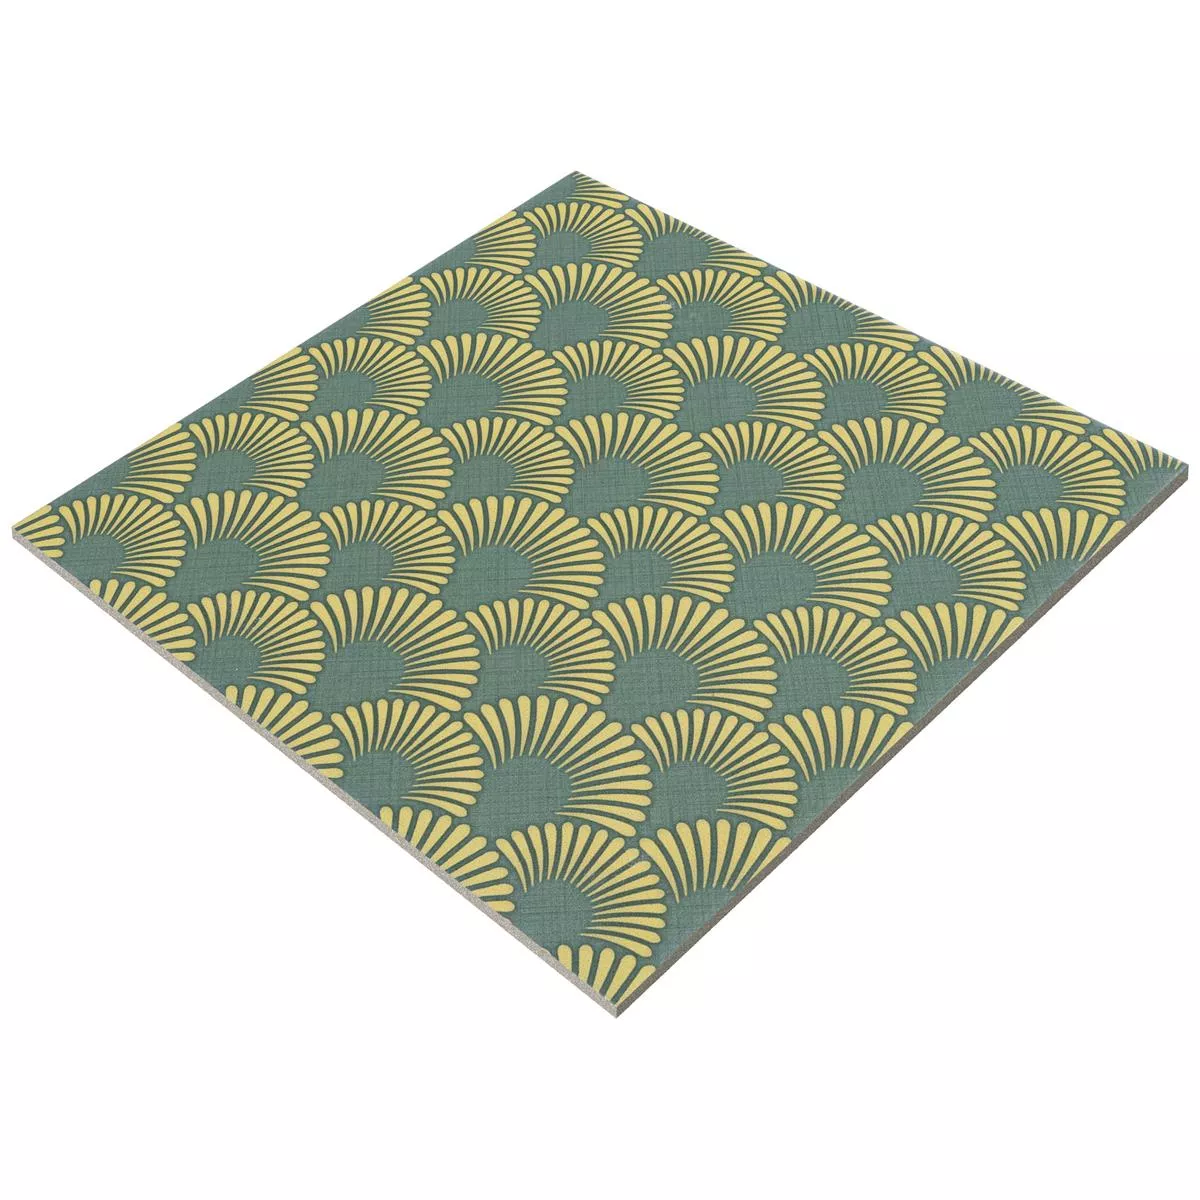 Podlahové Dlaždice Cementový Vzhled Wildflower Zelená Dekor 18,5x18,5cm 